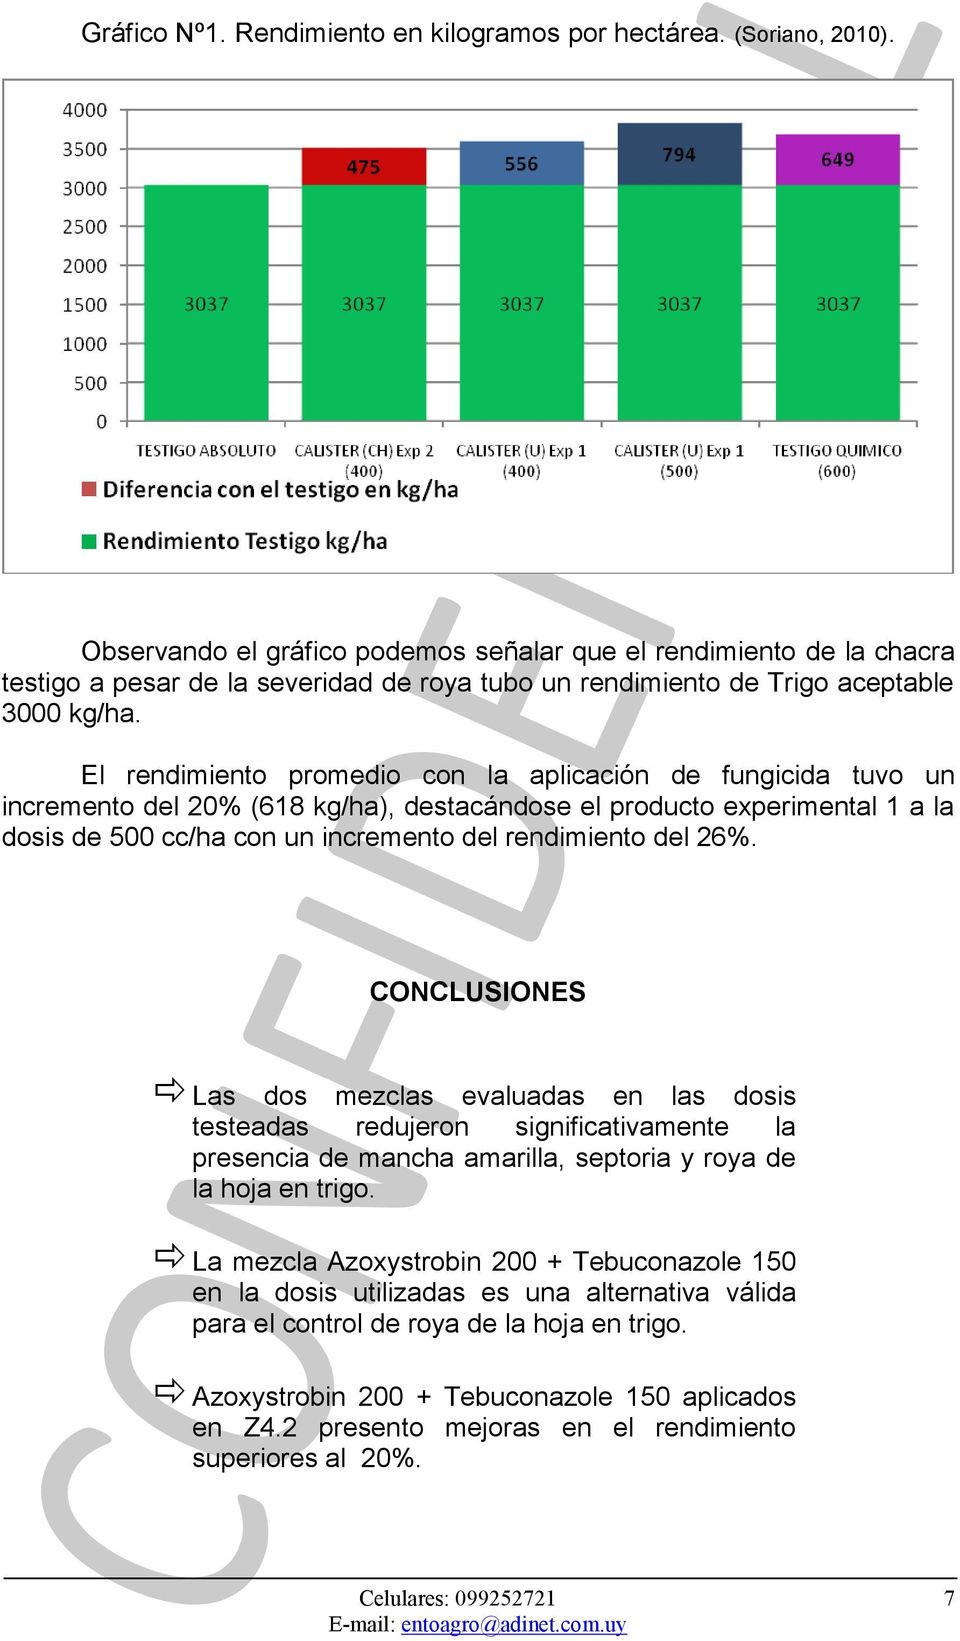 El rendimiento promedio con la aplicación de fungicida tuvo un incremento del 20% (618 kg/ha), destacándose el producto experimental 1 a la dosis de 500 cc/ha con un incremento del rendimiento del